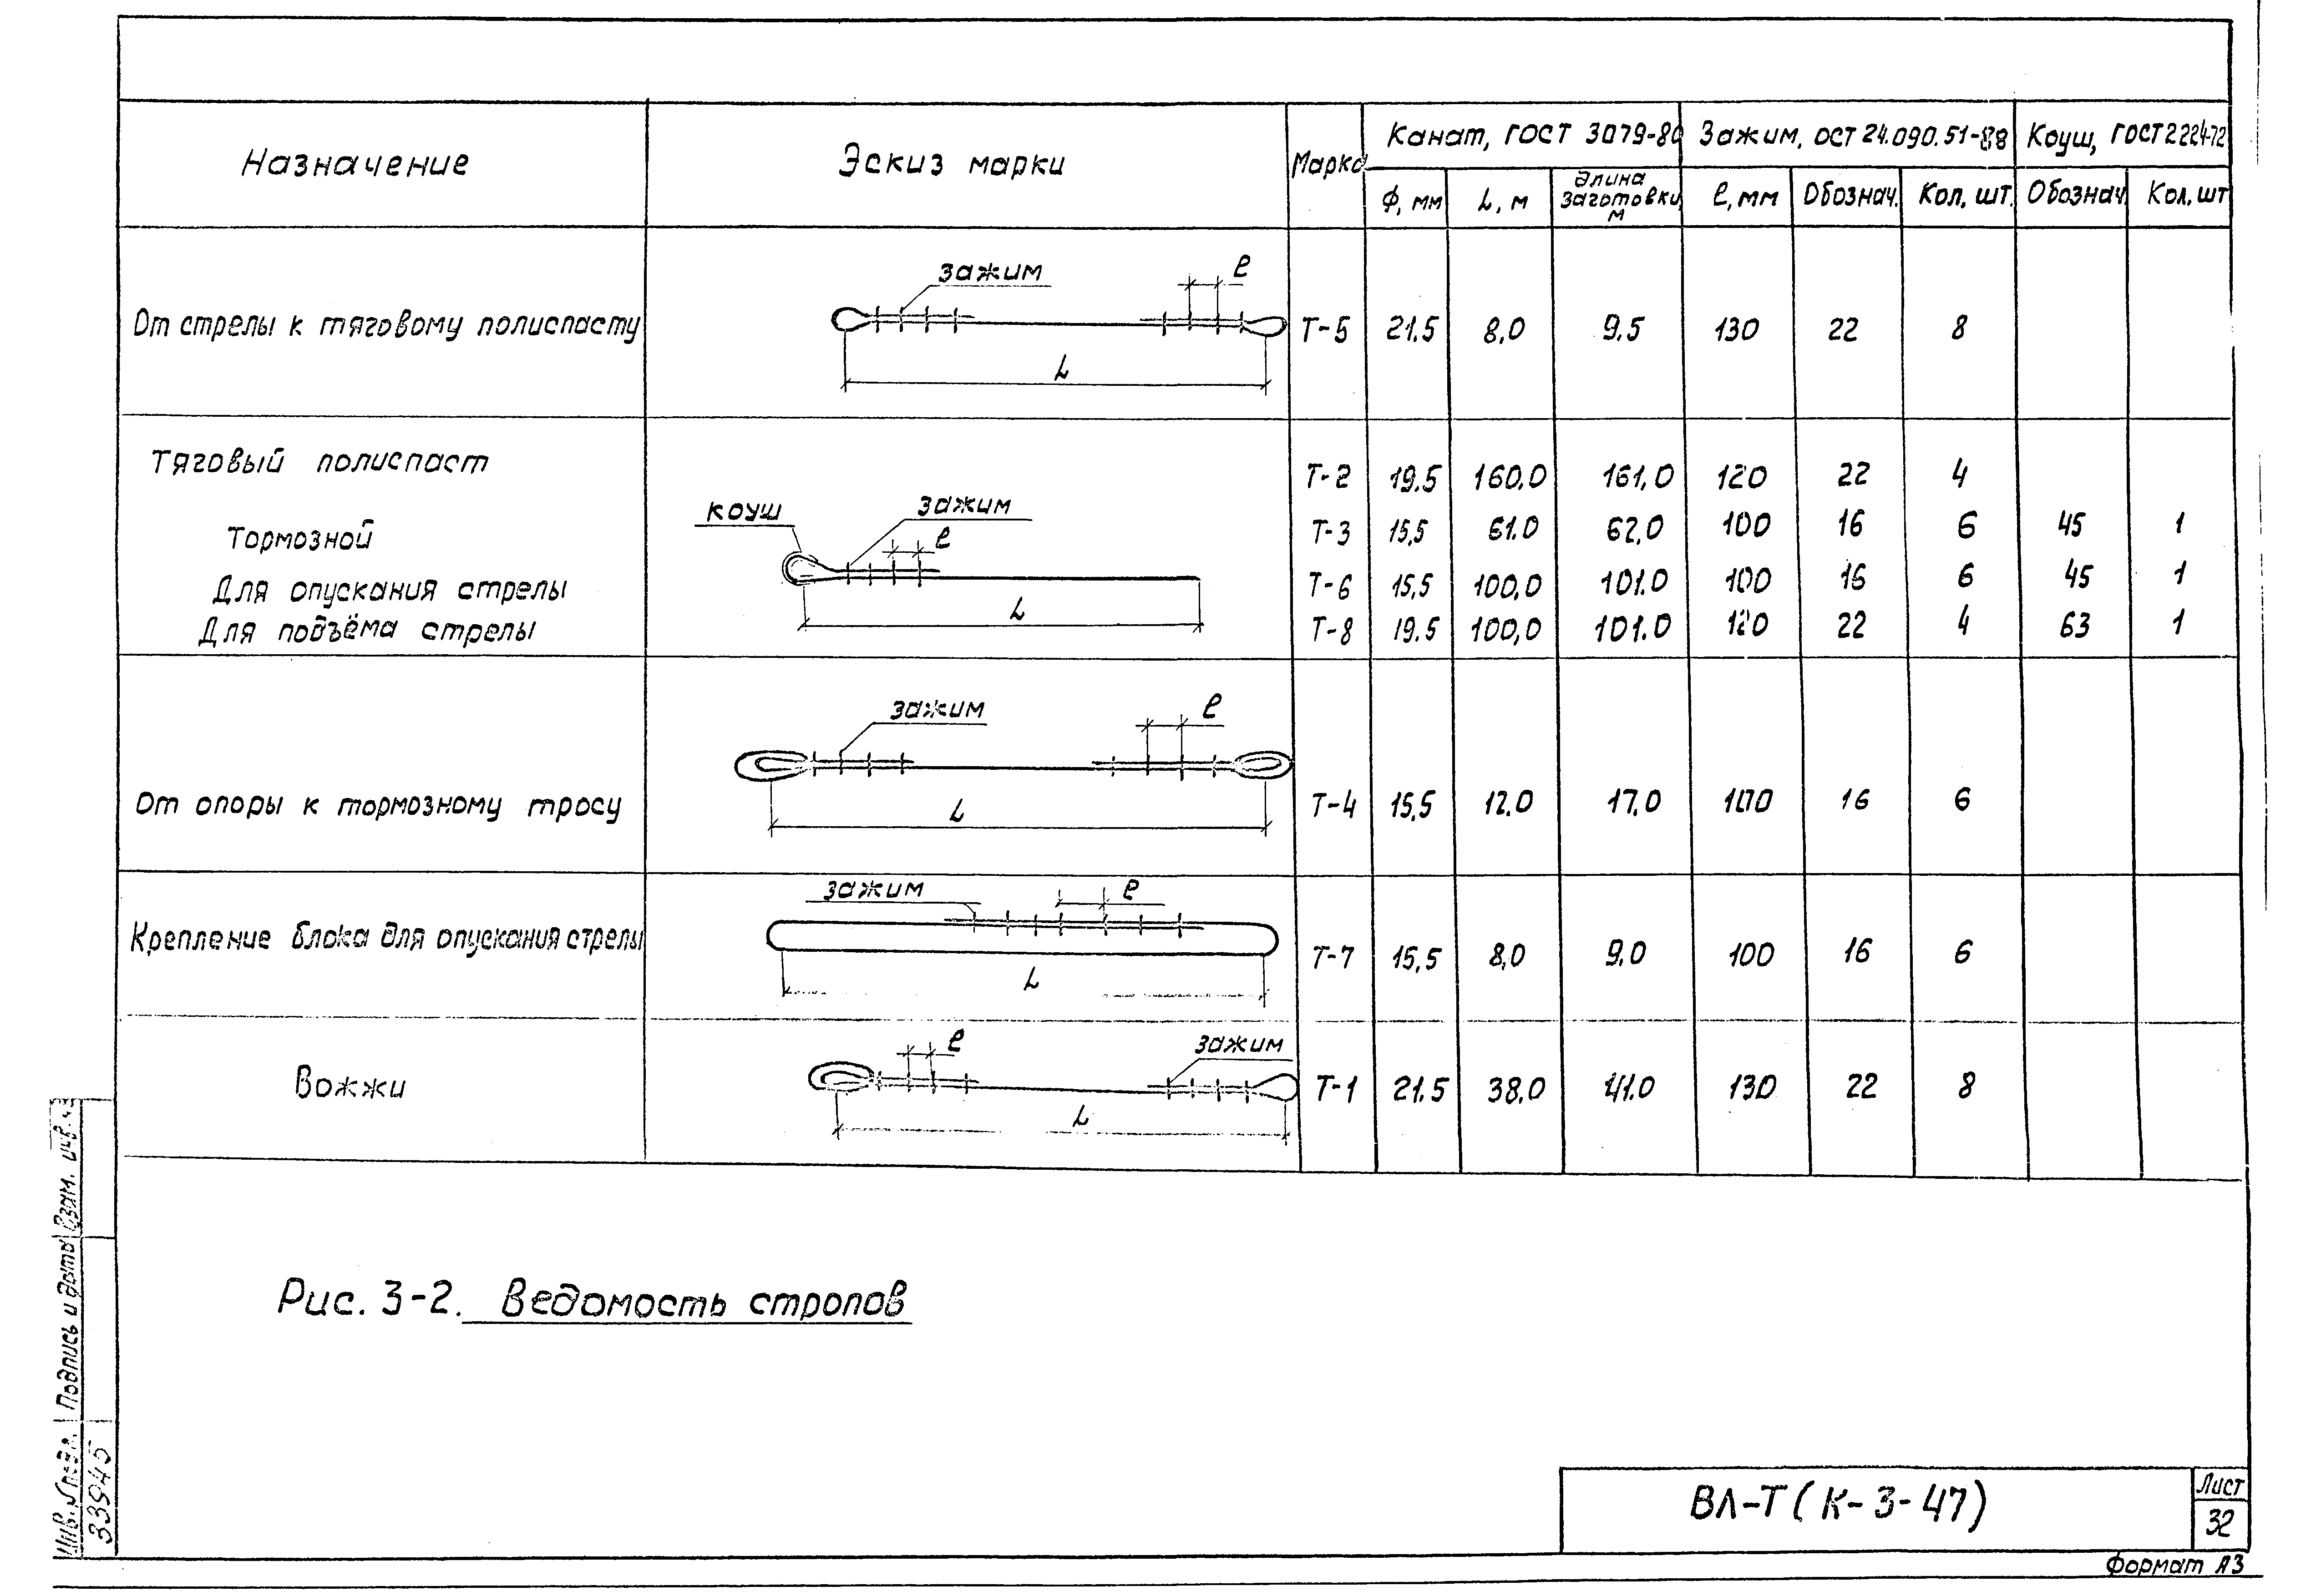 Технологическая карта К-3-47-3